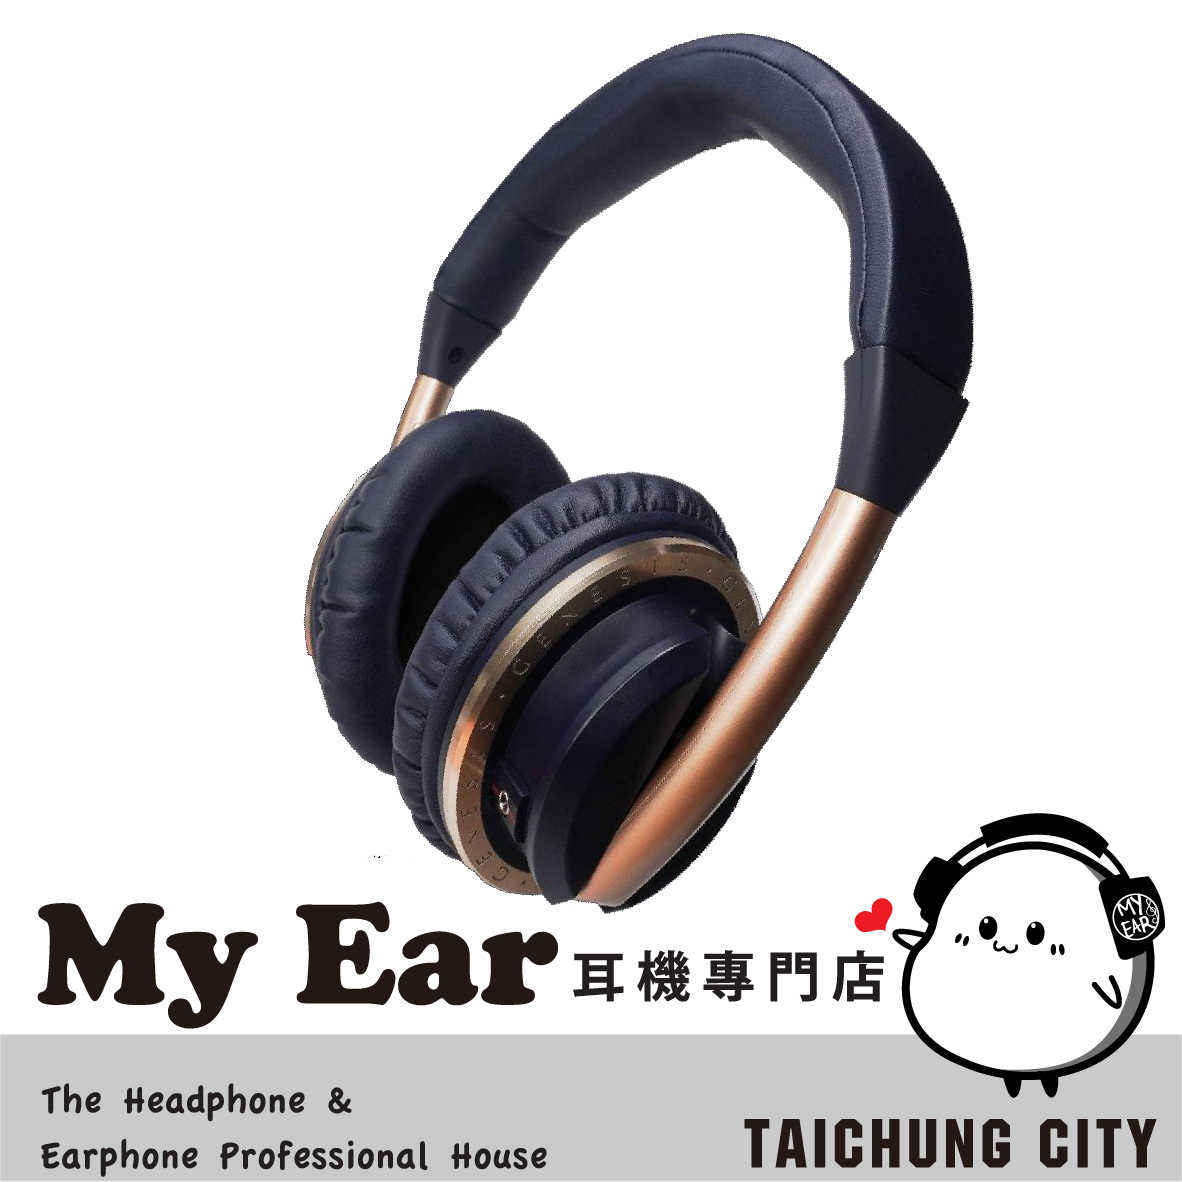 日本 GENESIS Infinity 40mm驅動 密閉式 動圈型 耳罩式 耳機 | My Ear 耳機專門店